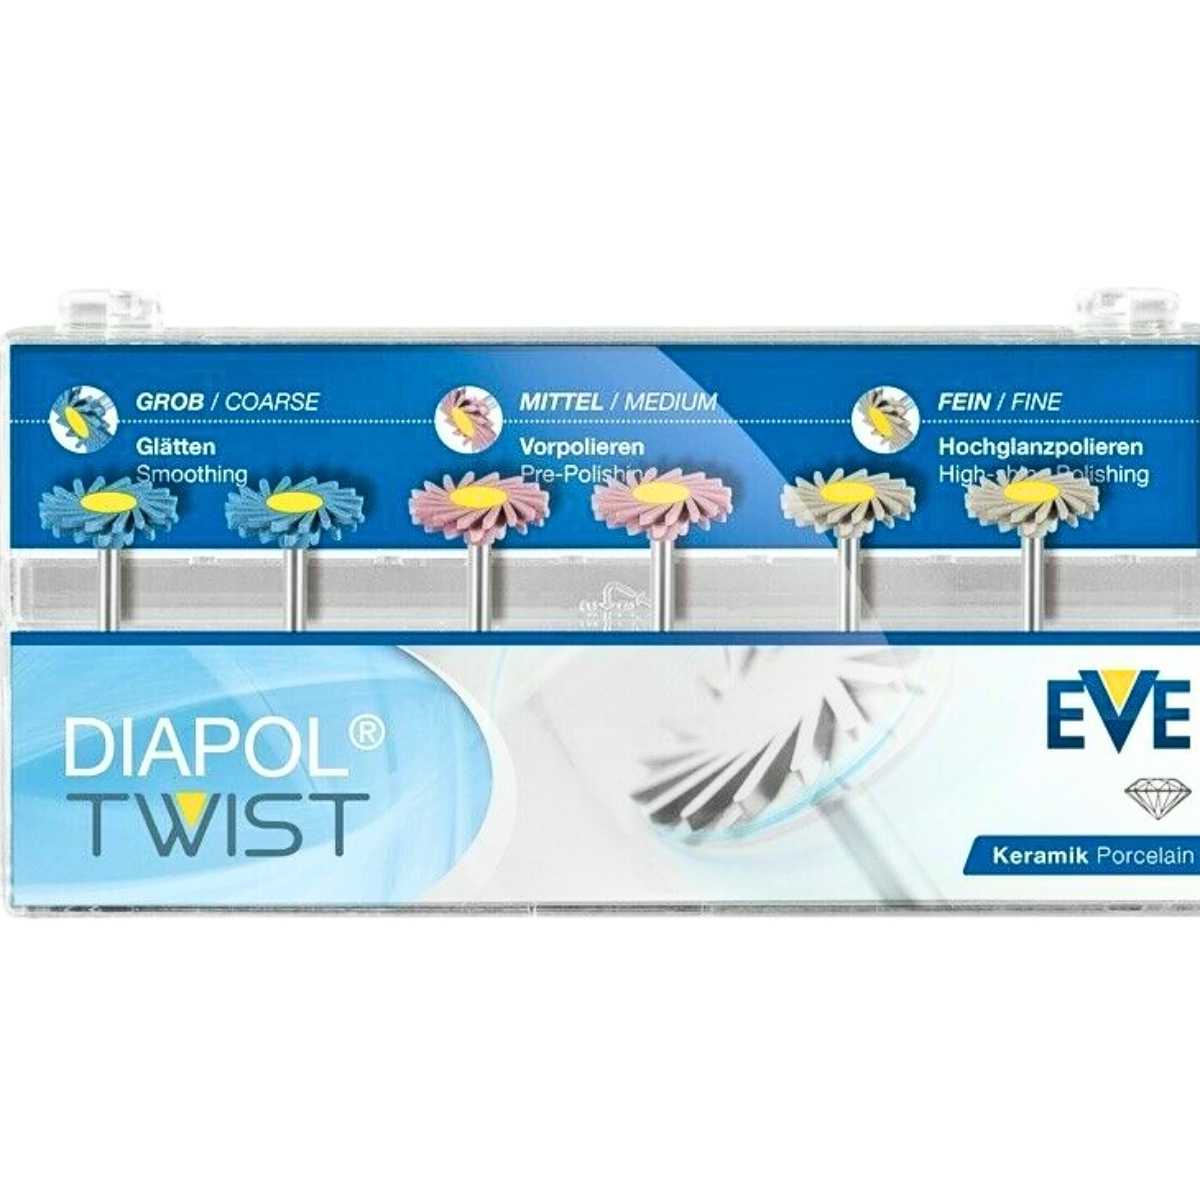 EVE Diapol Set RA 306 6pcs Diamond Twist Silicone